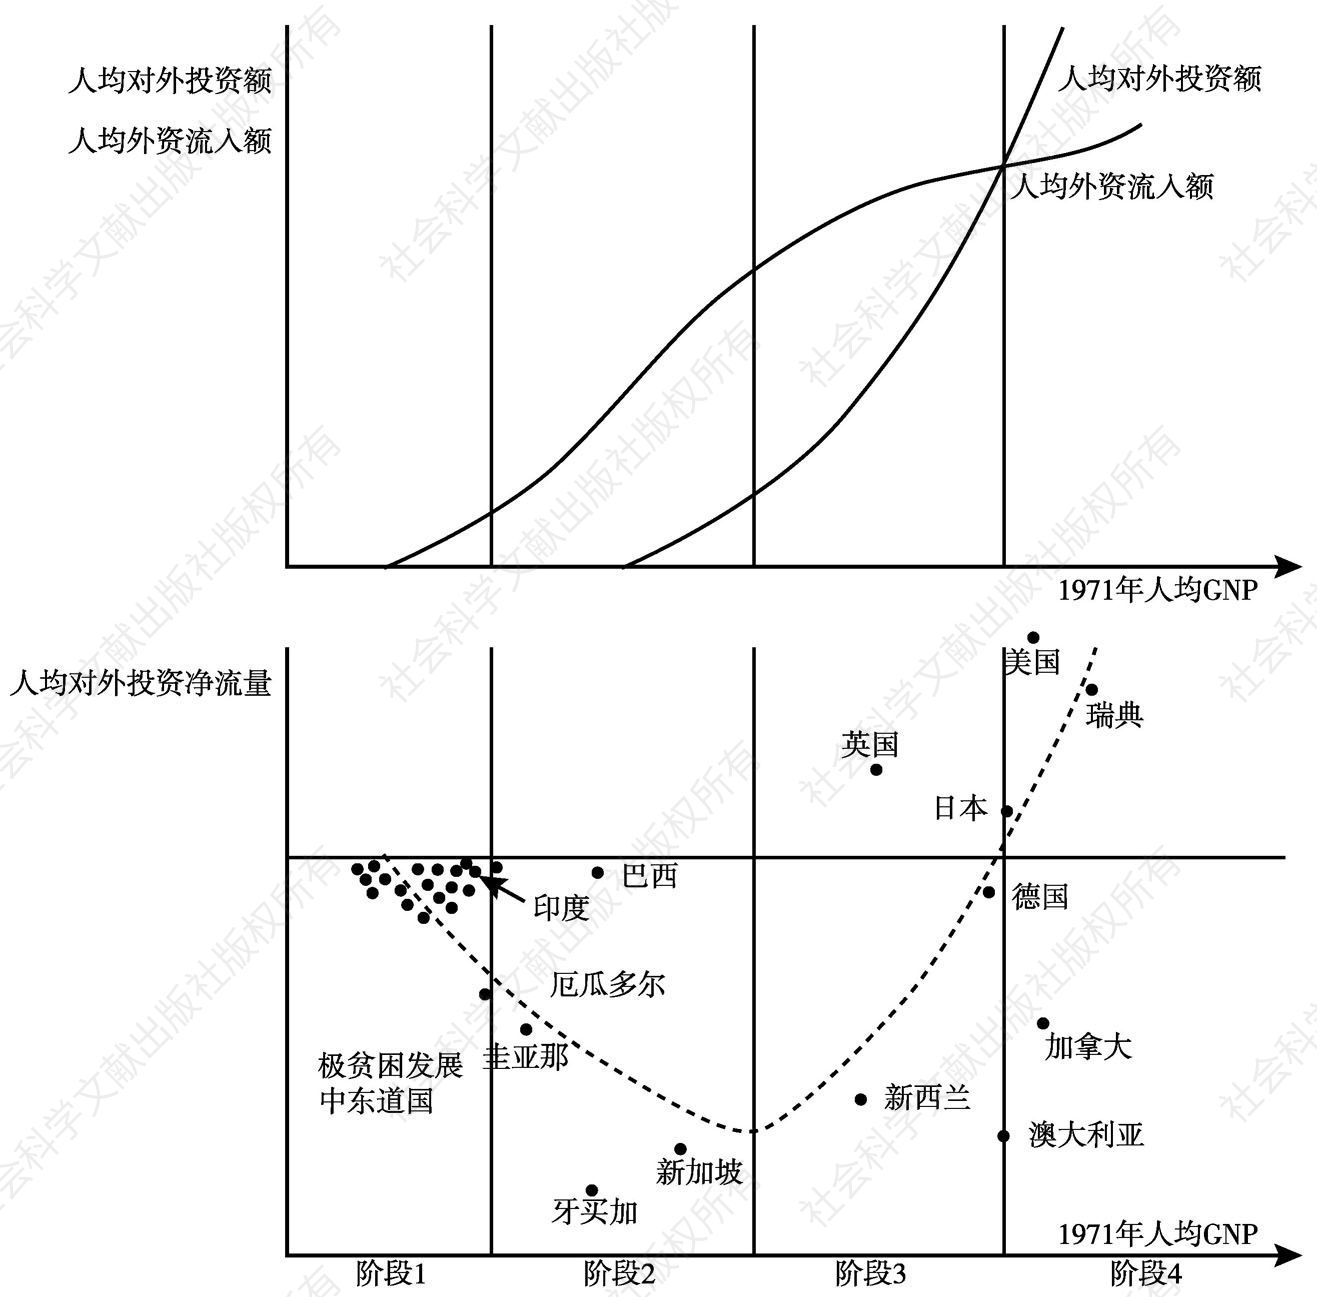 图1-9 对外直接投资与收入水平的关系（1967～1975年平均投资）